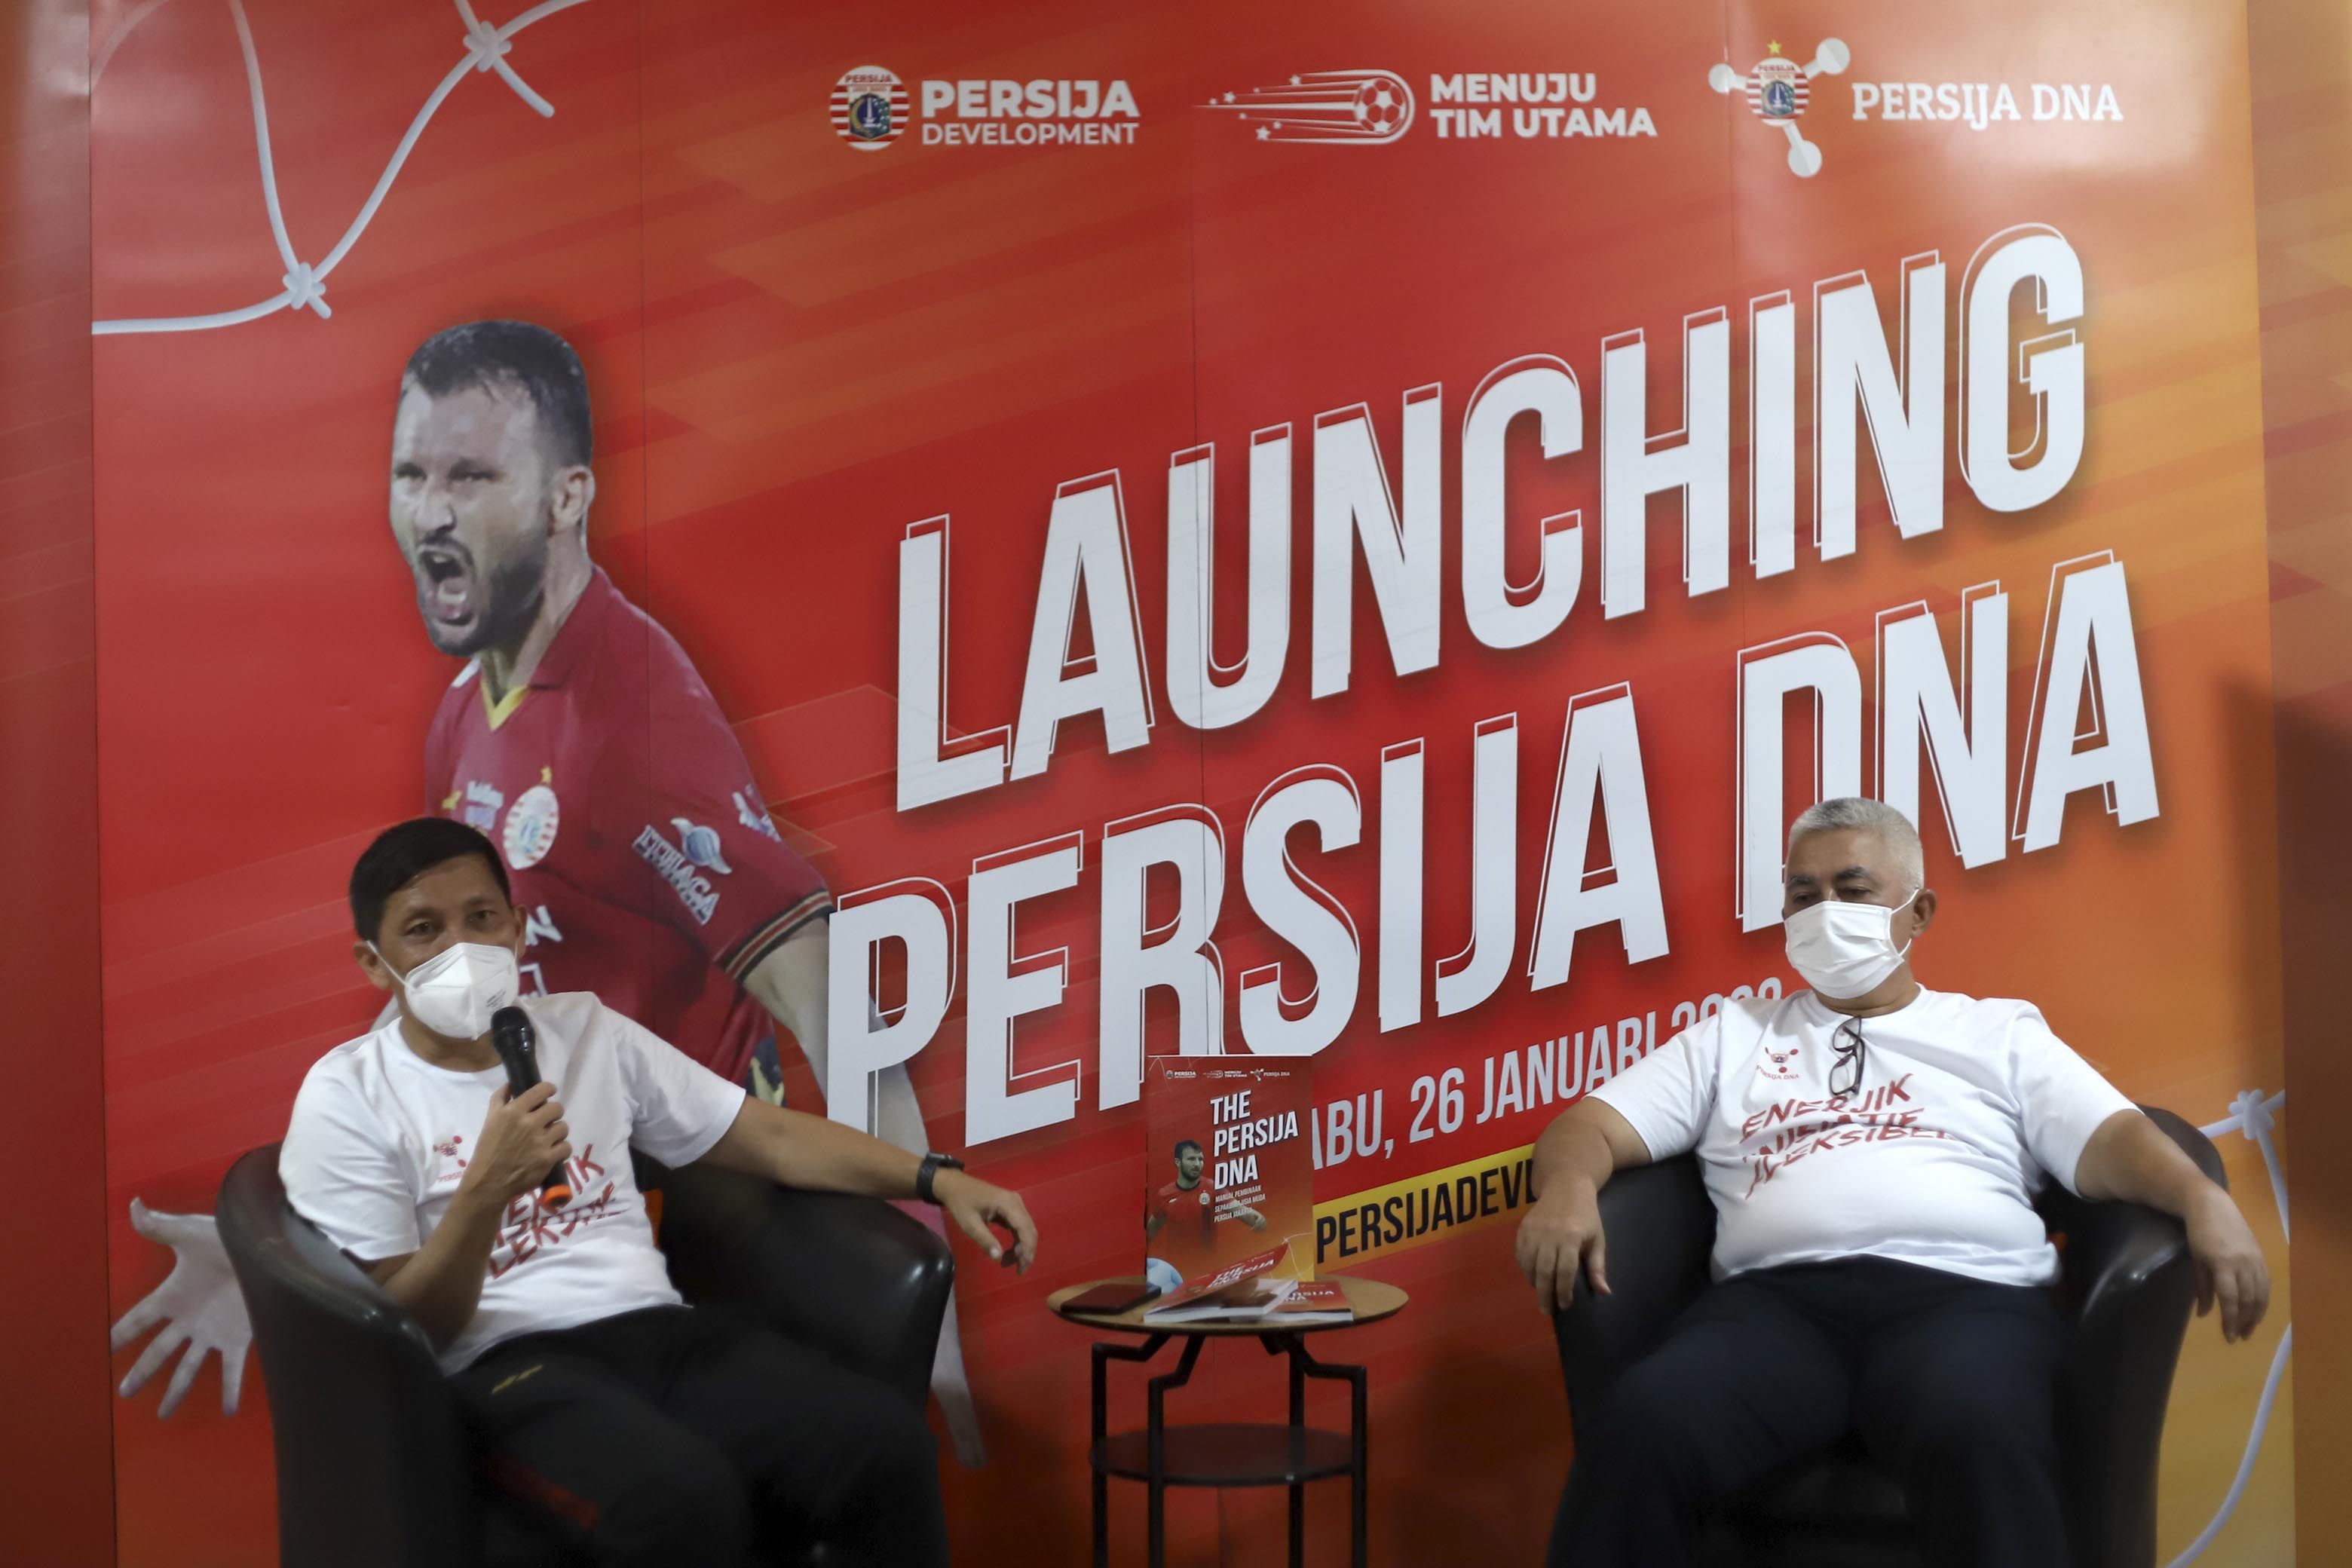 Direktur Olahraga Persija, Ferry Paulus (kiri) dan Direktur Utama Ambono Janurarianto dalam peluncuran Persija DNA, 26 Januari 2021.